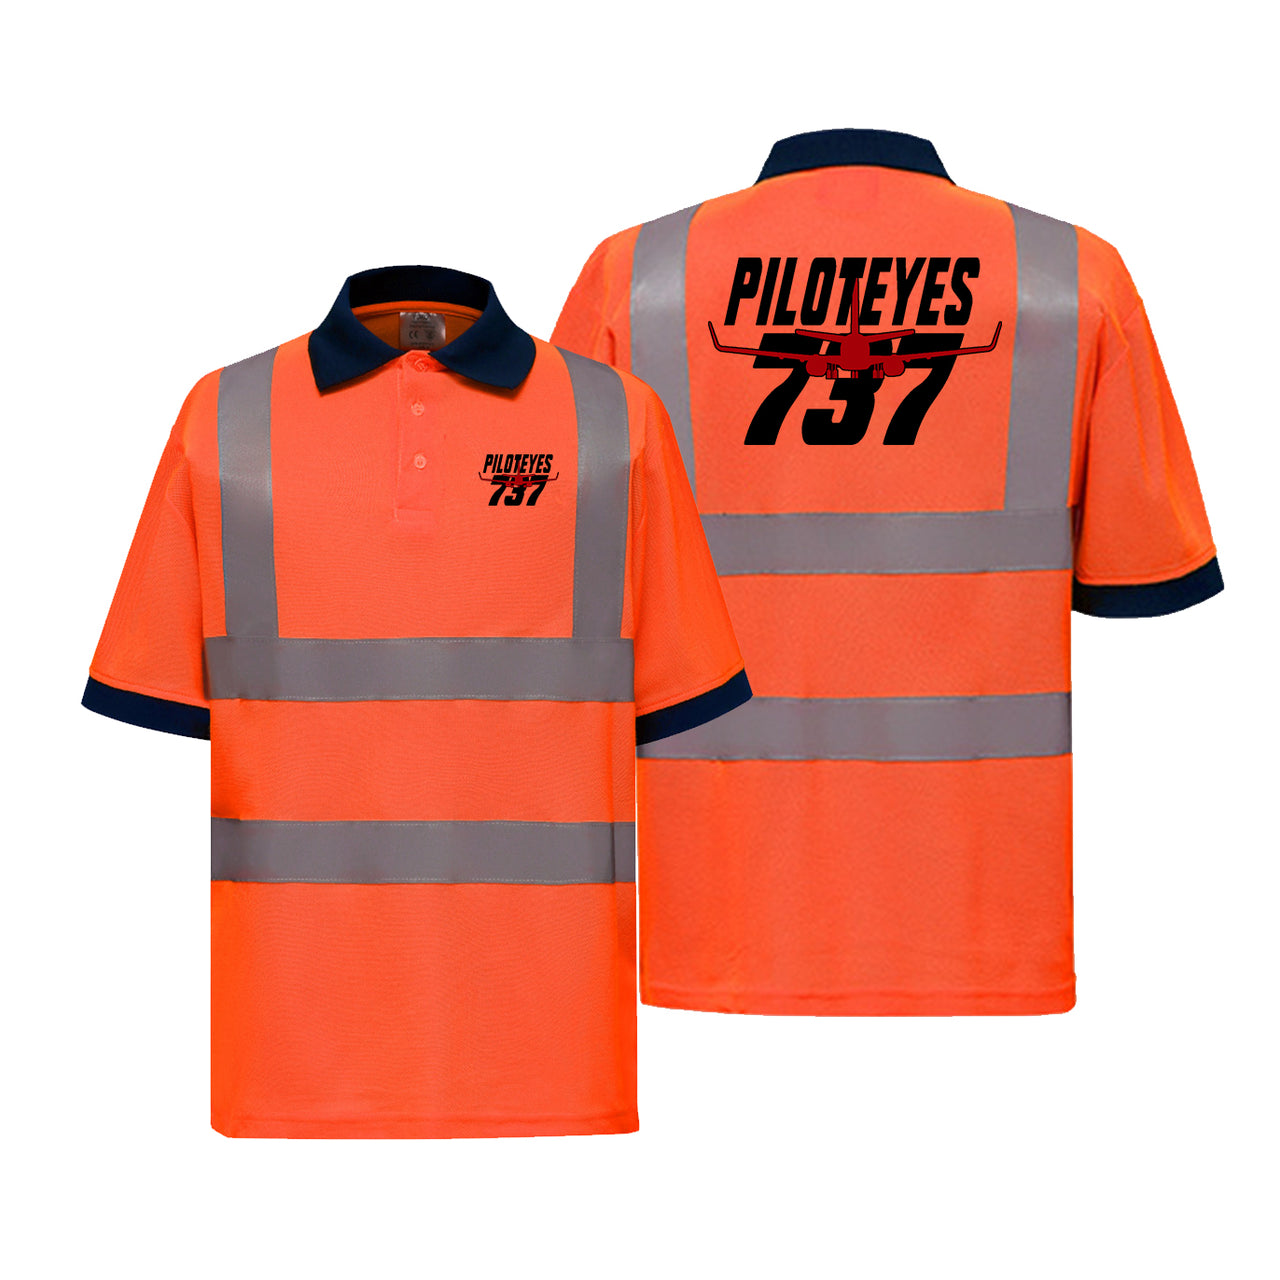 Amazing Piloteyes737 Designed Reflective Polo T-Shirts